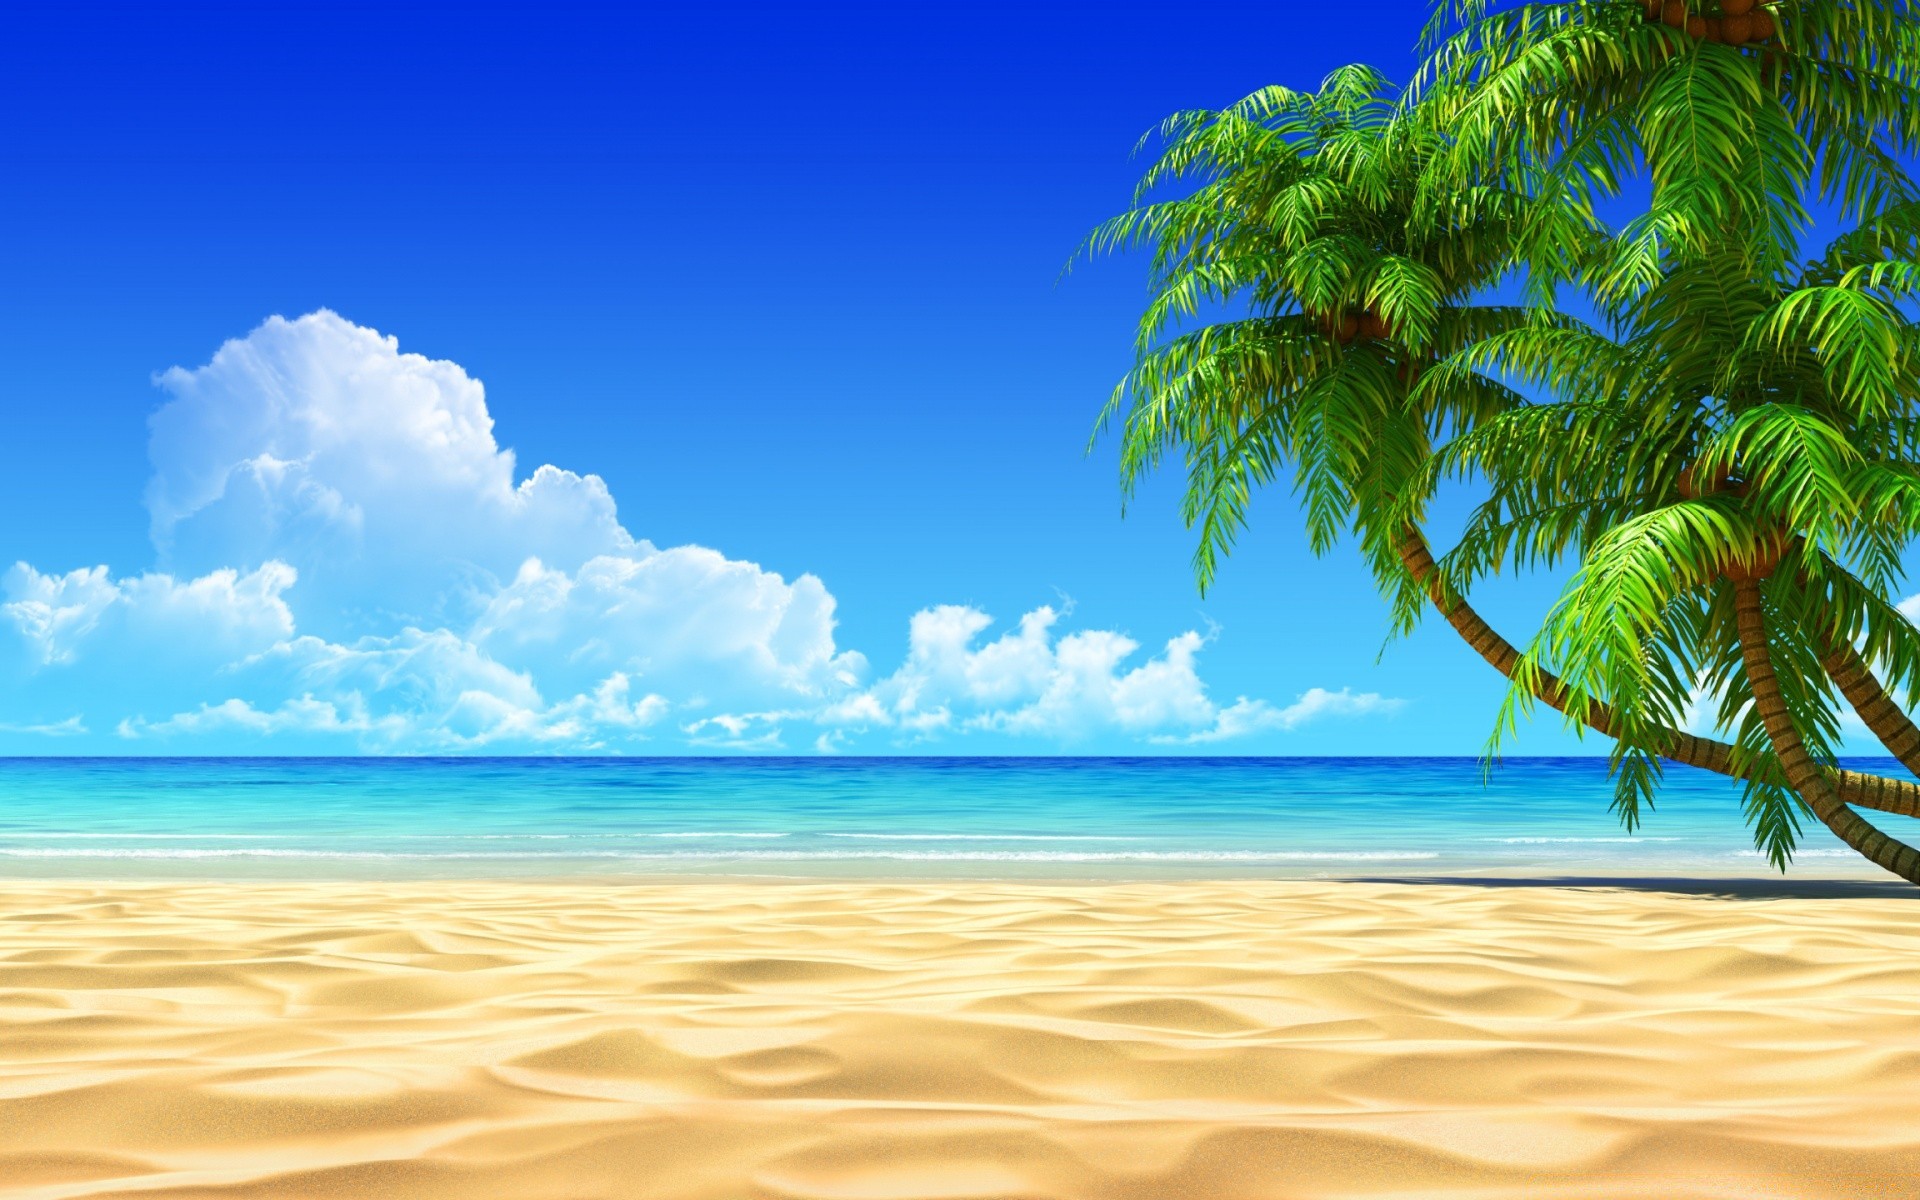 лето тропический песок пляж солнце рай моря океан воды идиллия пейзаж остров отпуск курорт экзотические прибой хорошую погоду море волна путешествия